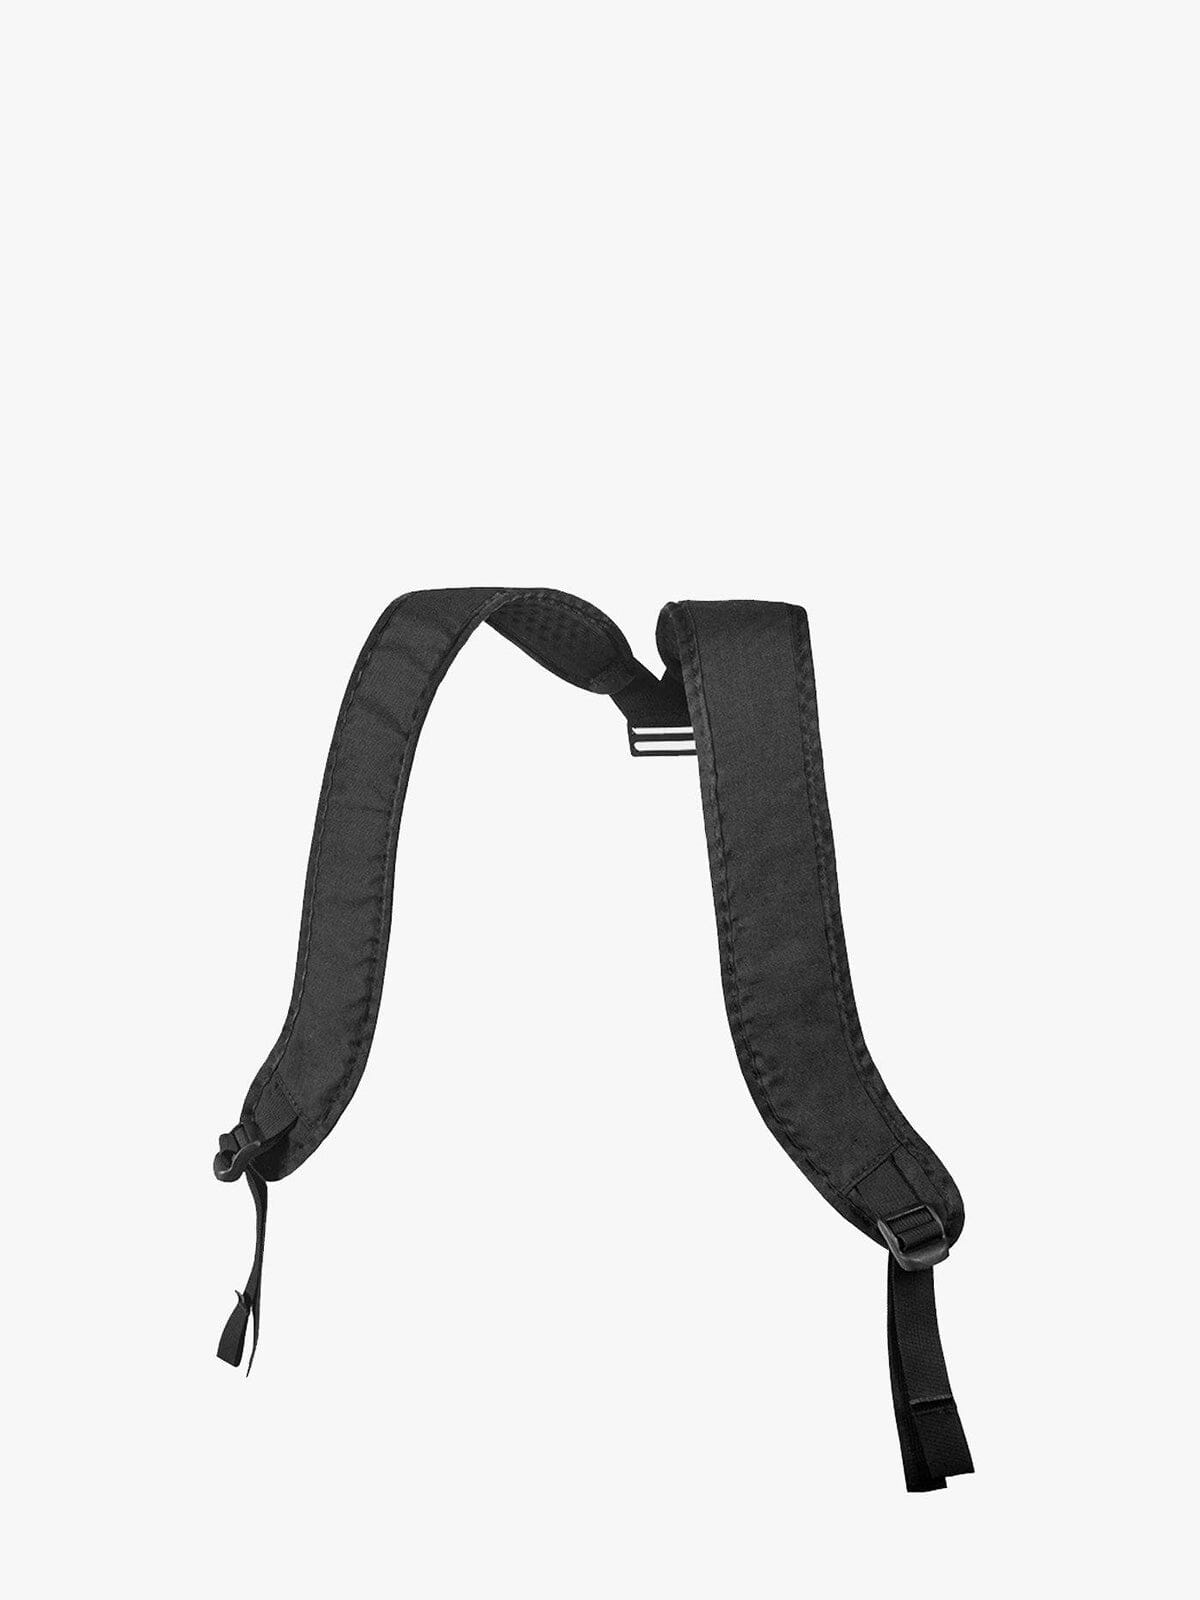 Durchreise : Duffle Backpack Harness von Mission Workshop - Wetterfeste Taschen und technische Bekleidung - San Francisco & Los Angeles - Für die Ewigkeit gebaut - Garantiert